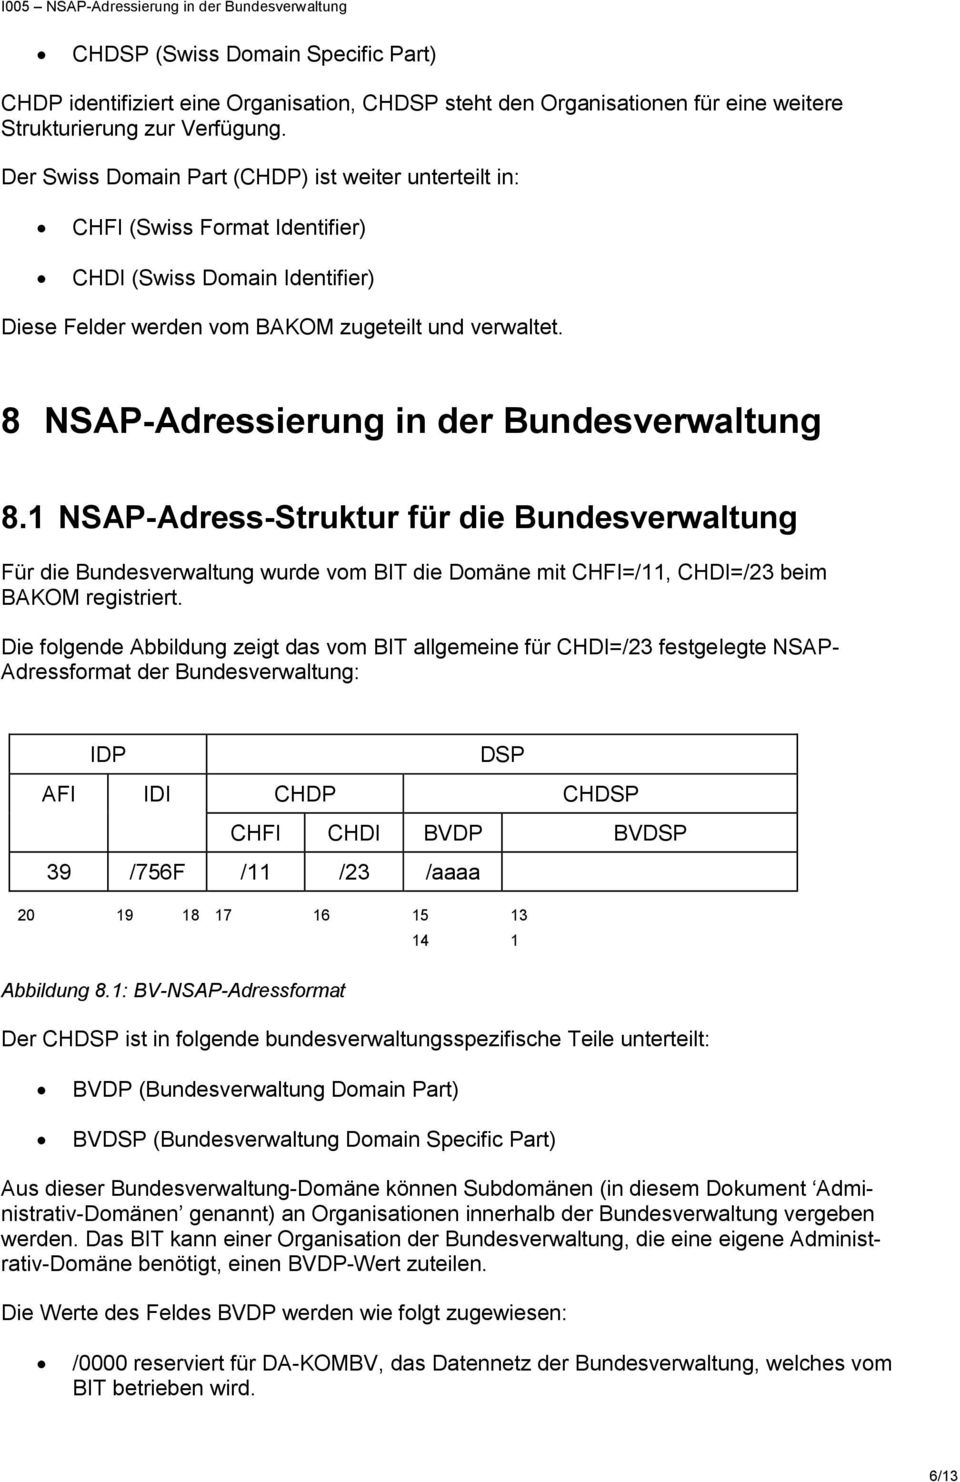 8 NSAP-Adressierung in der Bundesverwaltung 8.1 NSAP-Adress-Struktur für die Bundesverwaltung Für die Bundesverwaltung wurde vom BIT die Domäne mit CHFI=/11, CHDI=/23 beim BAKOM registriert.